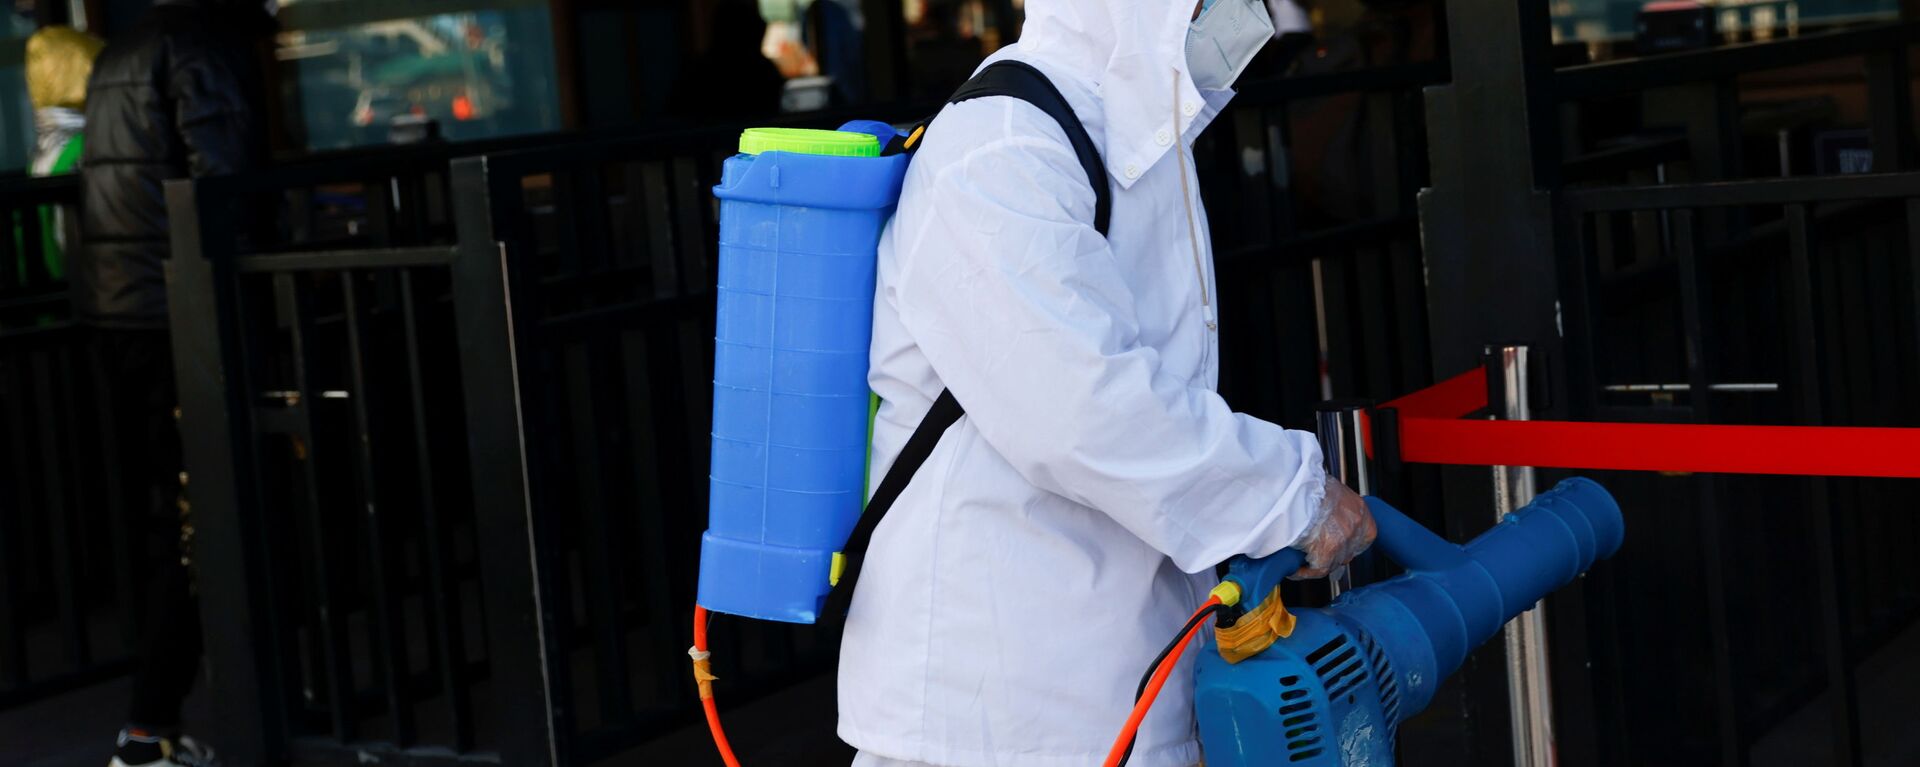 Работник в защитном костюме во время дезинфекции вокзала в Пекине, Китай - Sputnik Ўзбекистон, 1920, 10.11.2021